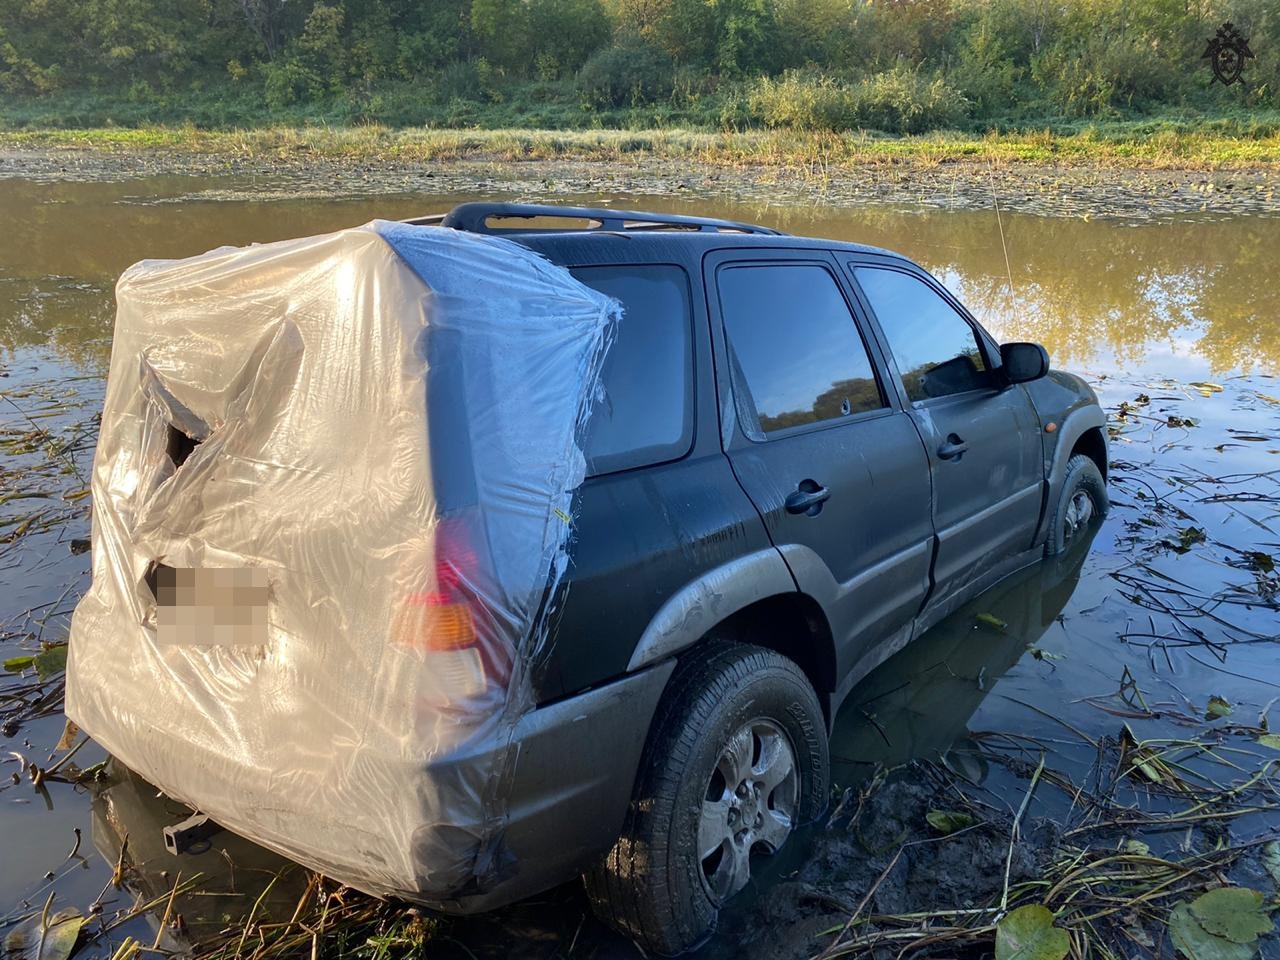 На Автозаводе в озере нашли машину. Внутри был мужчина с простреленной головой